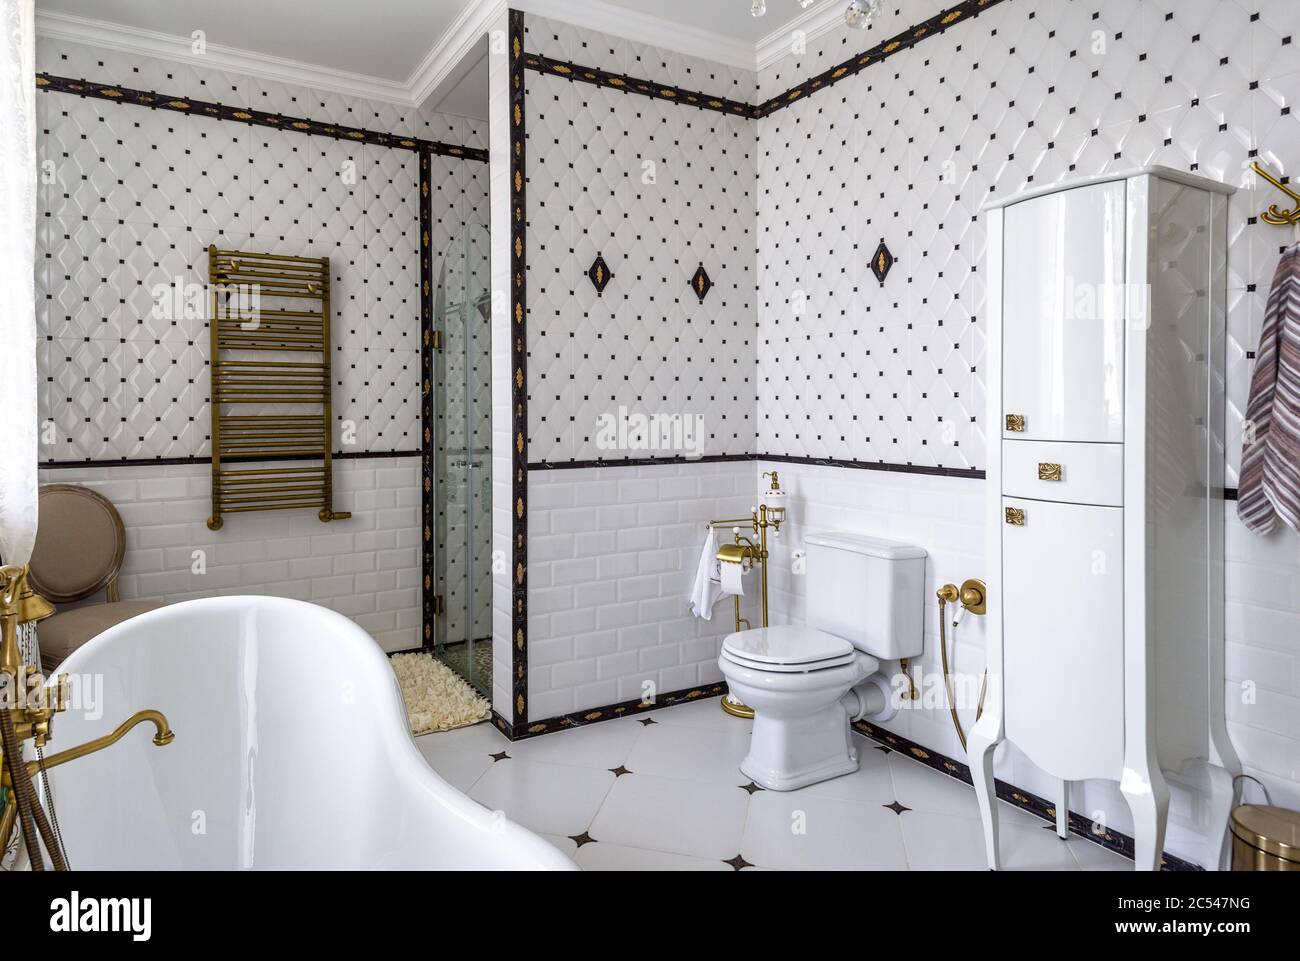 Moskau - Aug 24, 2019: Inneneinrichtung des Badezimmers im Hotel oder Wohnhaus. Inneneinrichtung der Toilette im klassischen Stil mit weißen Fliesen. Panorama vi Stockfoto